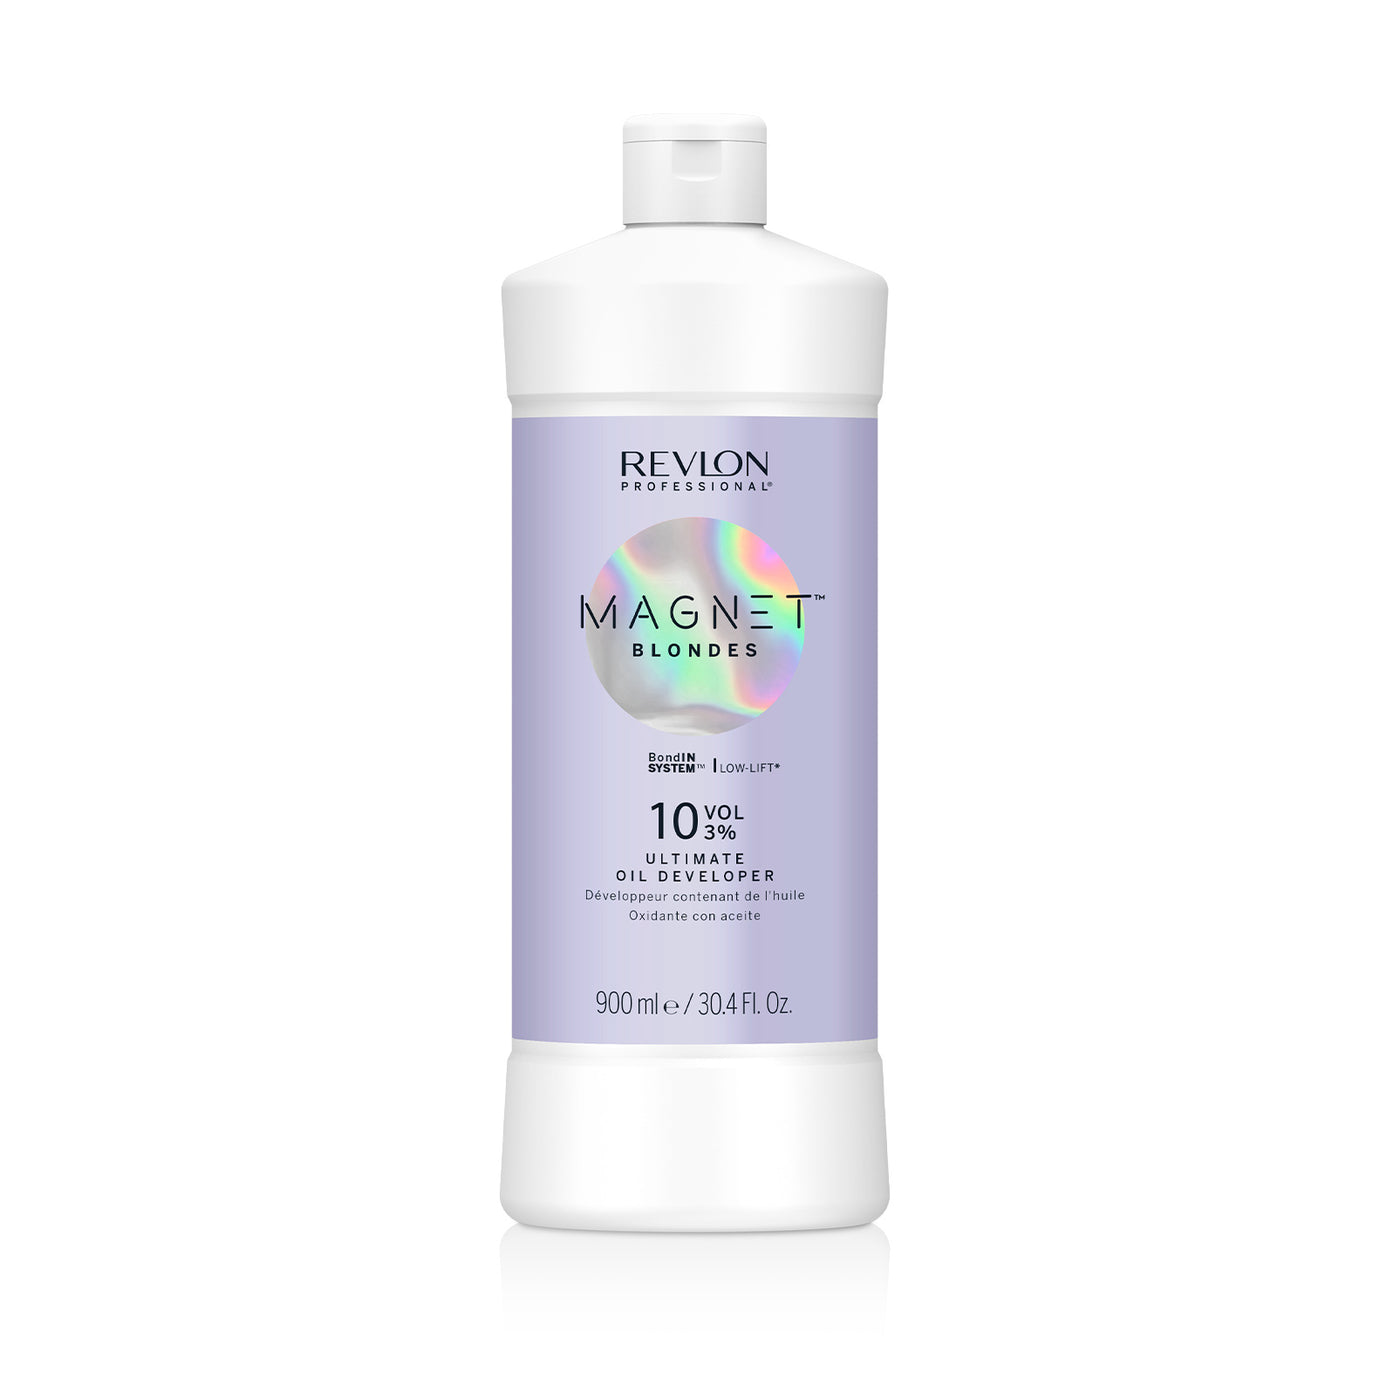 Revlon Magnet Blondes Oil Developer 10 Vol 3% 900ml - Salon Warehouse